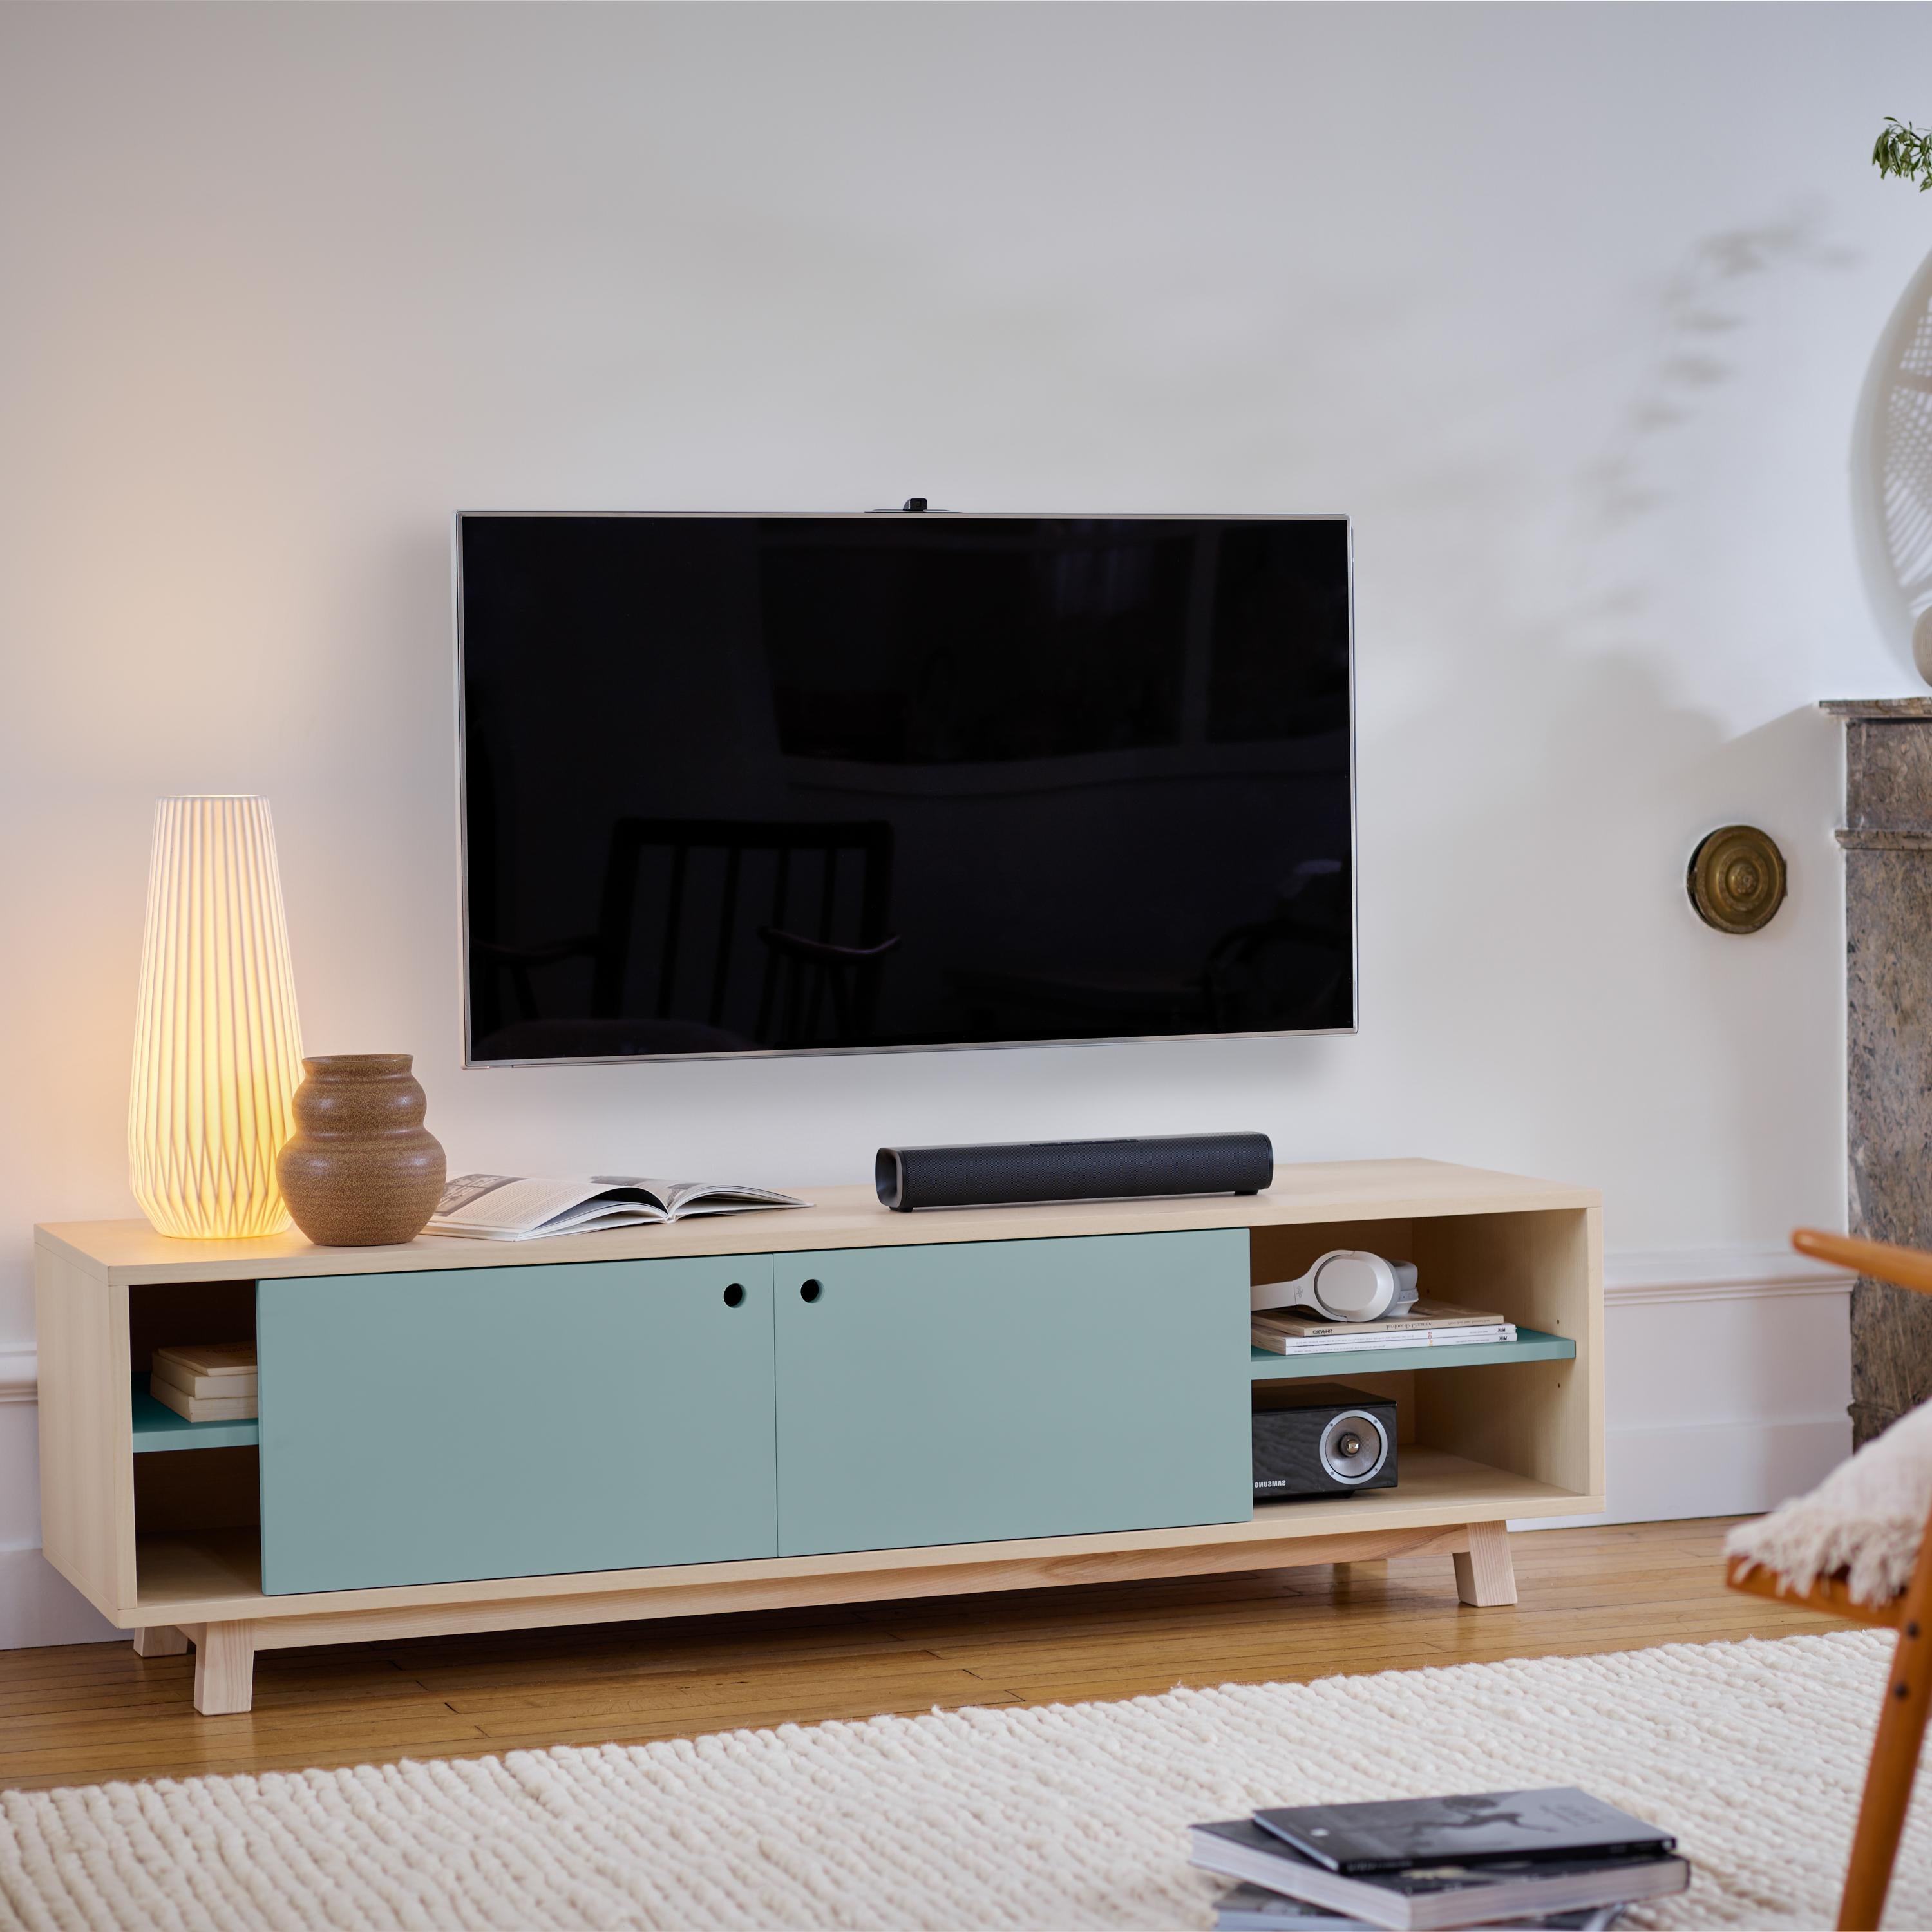 Ce meuble TV avec 2 portes coulissantes est conçu par Eric Gizard - Paris.

Il est 100% fabriqué en France avec du frêne massif et plaqué et des portes en MDF laqué. 

Pour tirer la porte, utilisez l'œillet rond. 
2 tablettes en bois réglables sur